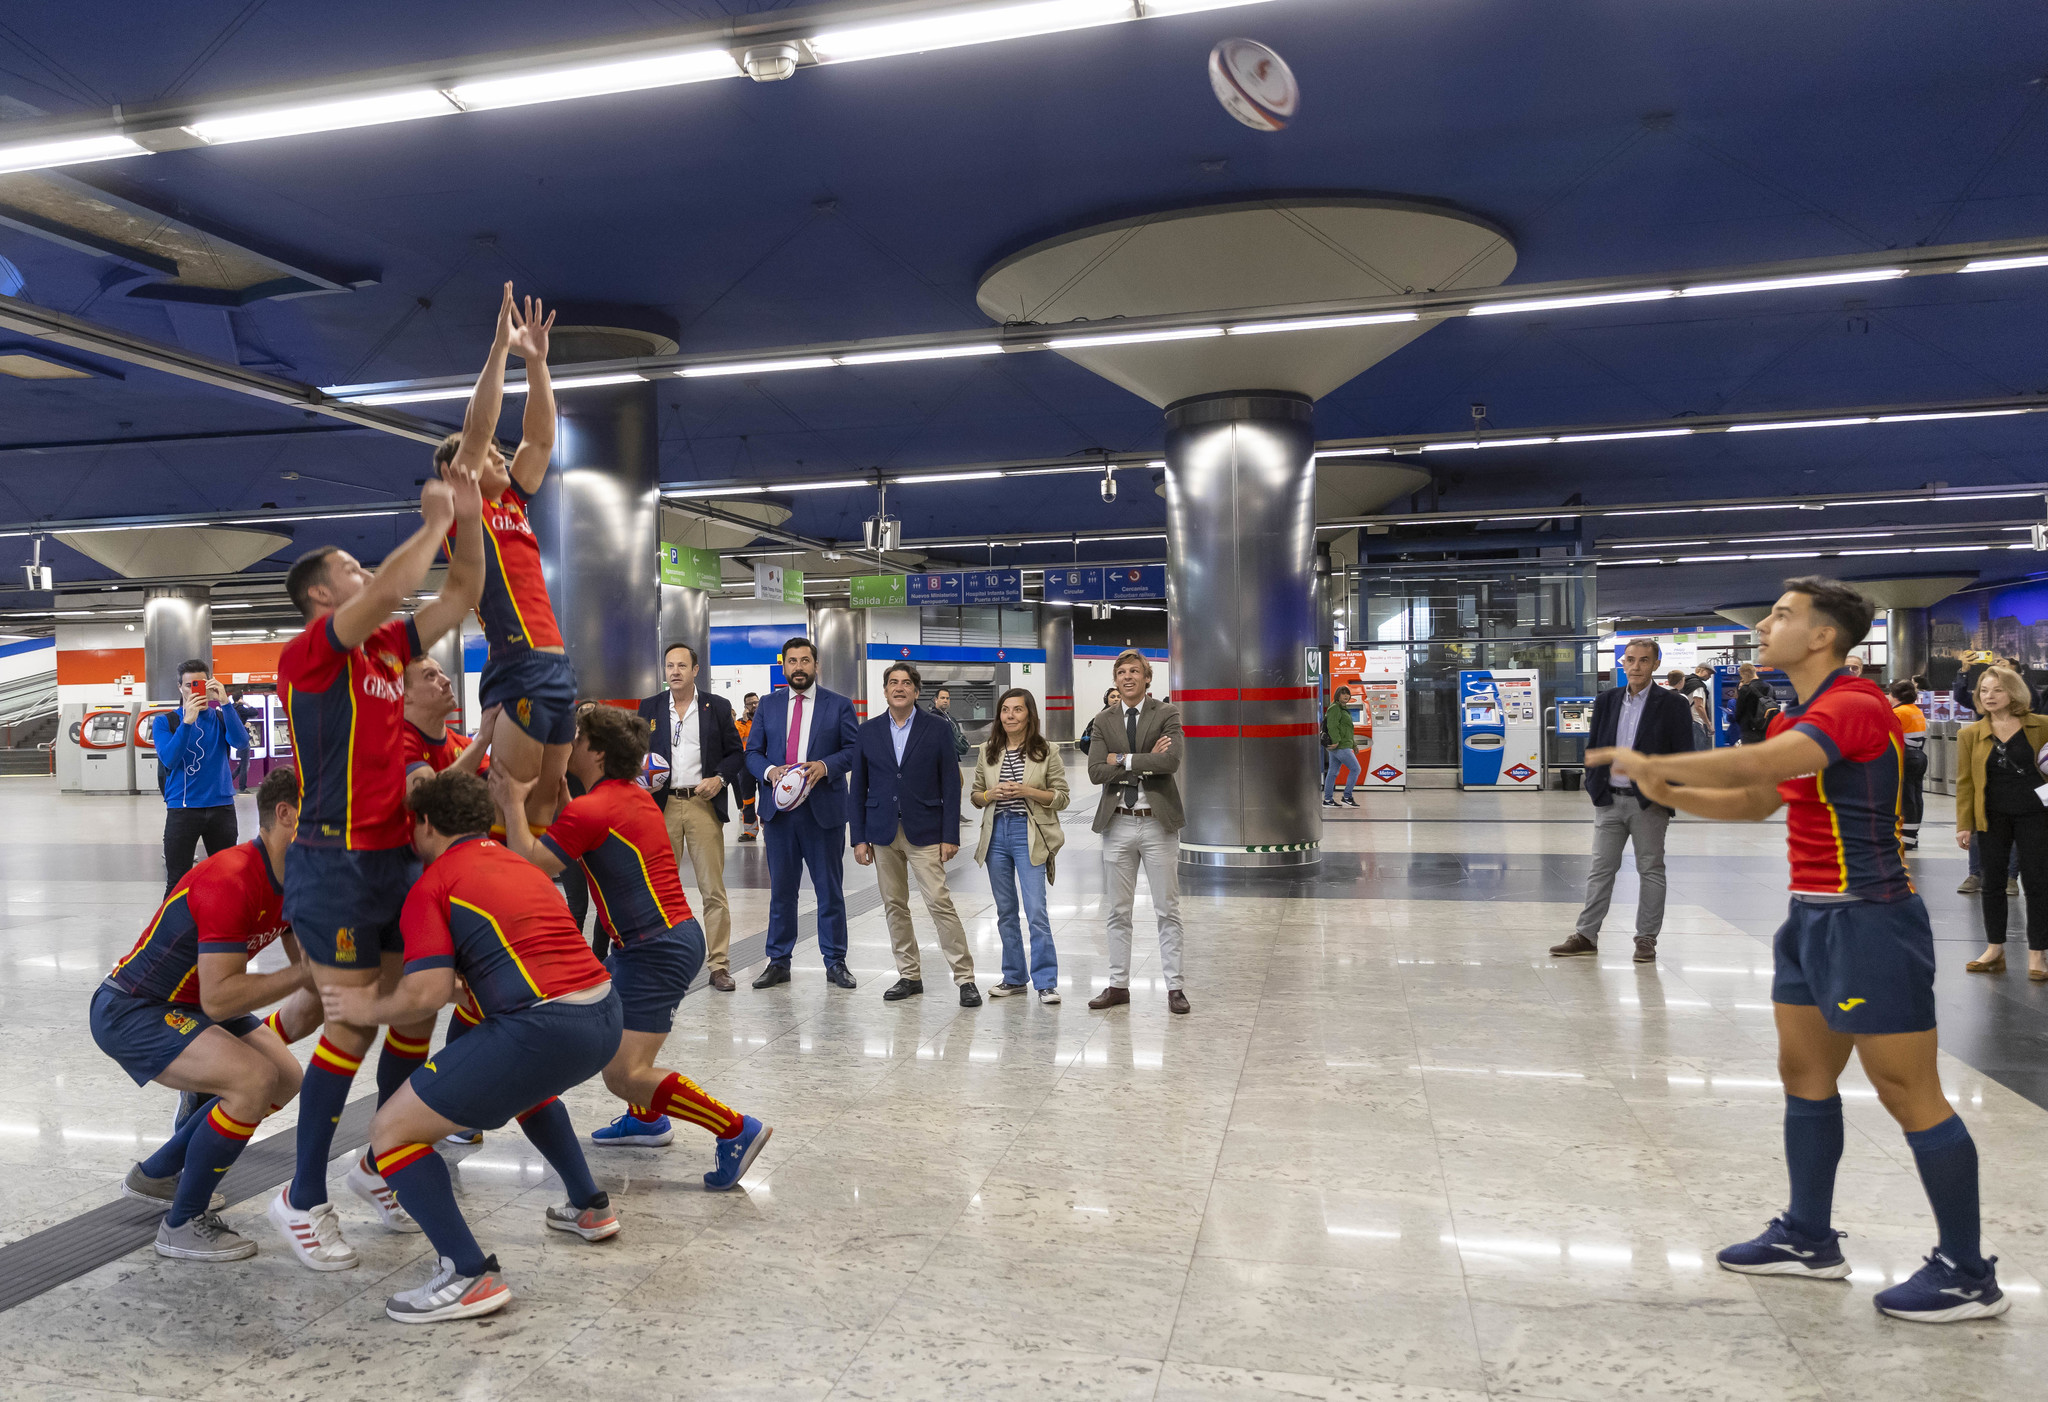 El rugby toma el metro en apoyo a 'The Match' entre España y Argentina